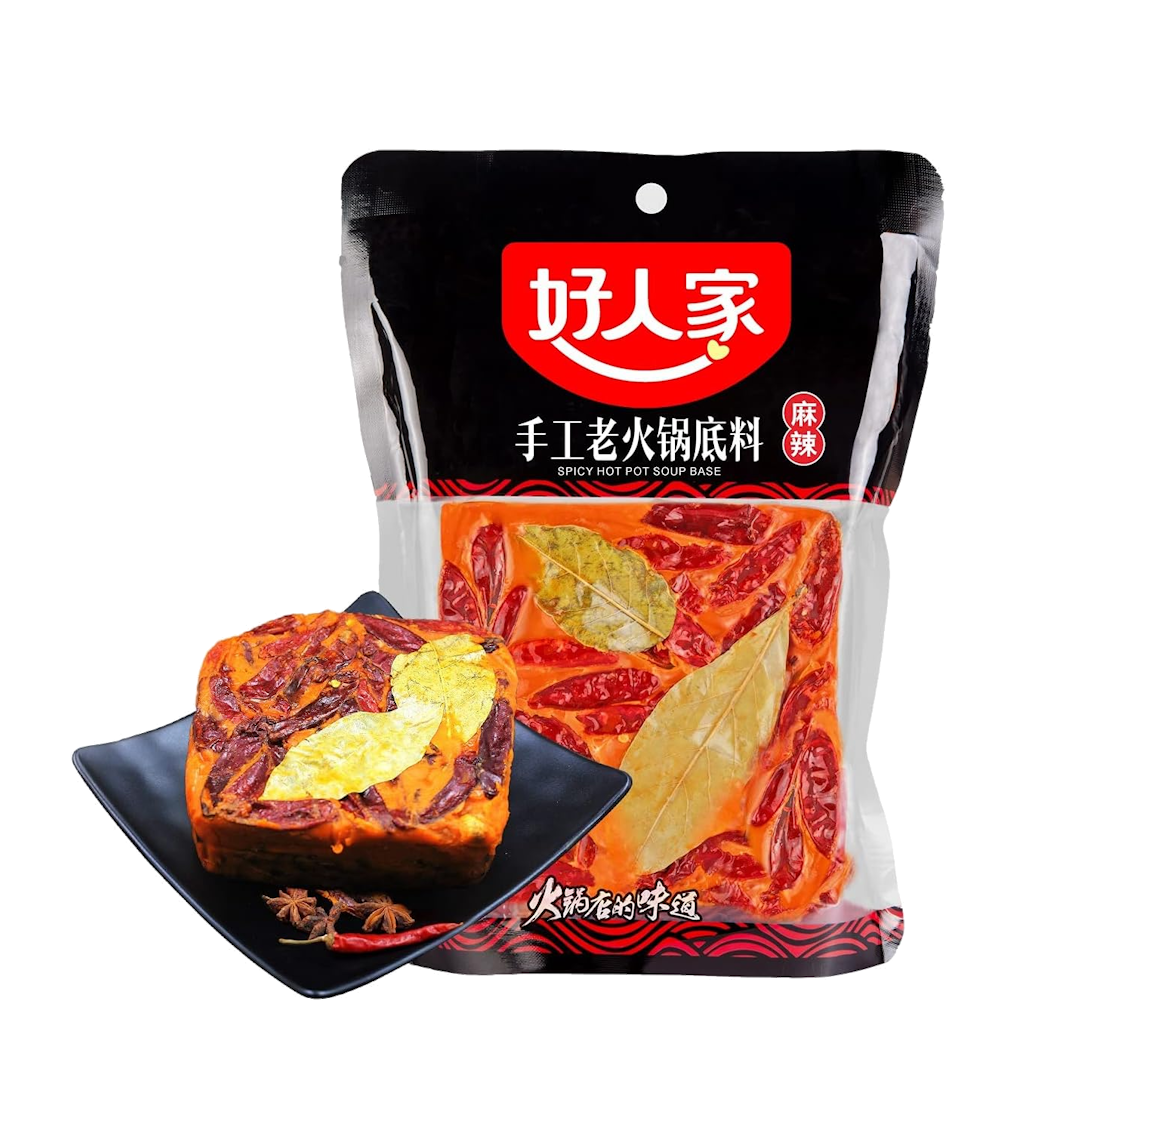 Haorenjia Sichuan hot pot soup base 500g